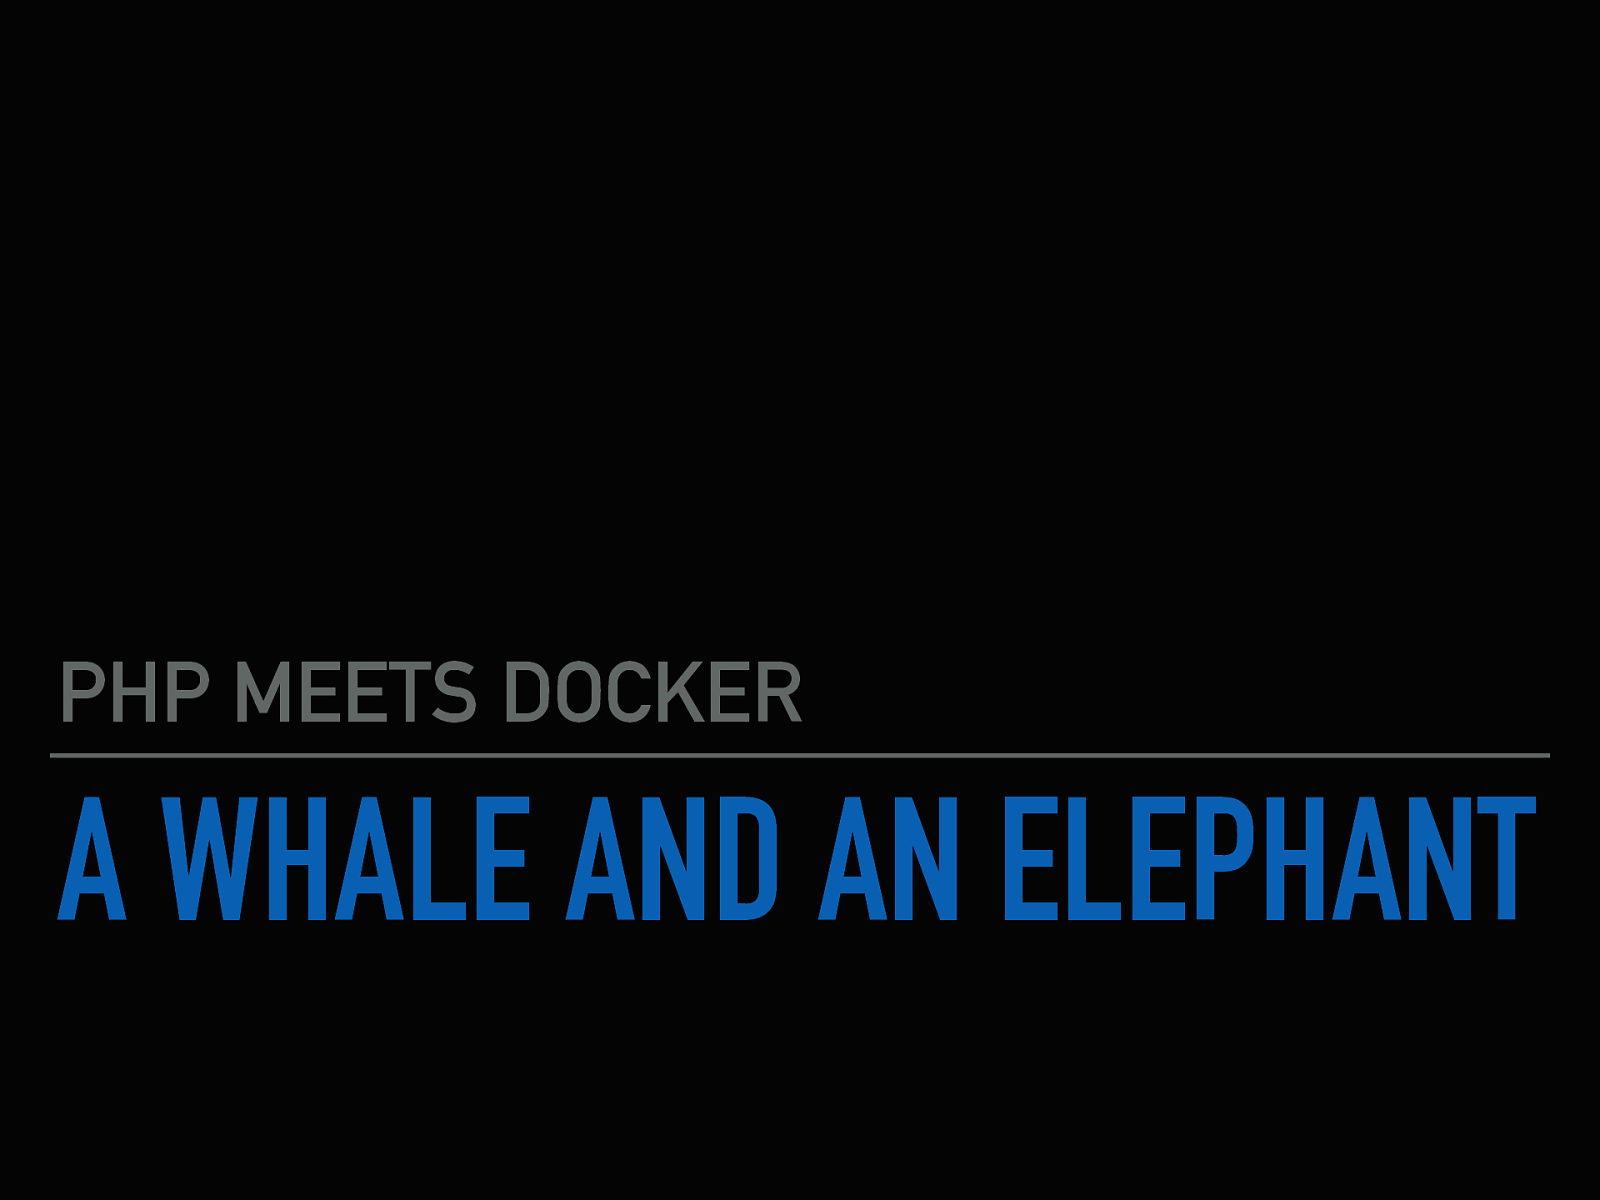 A Whale and an Elephant